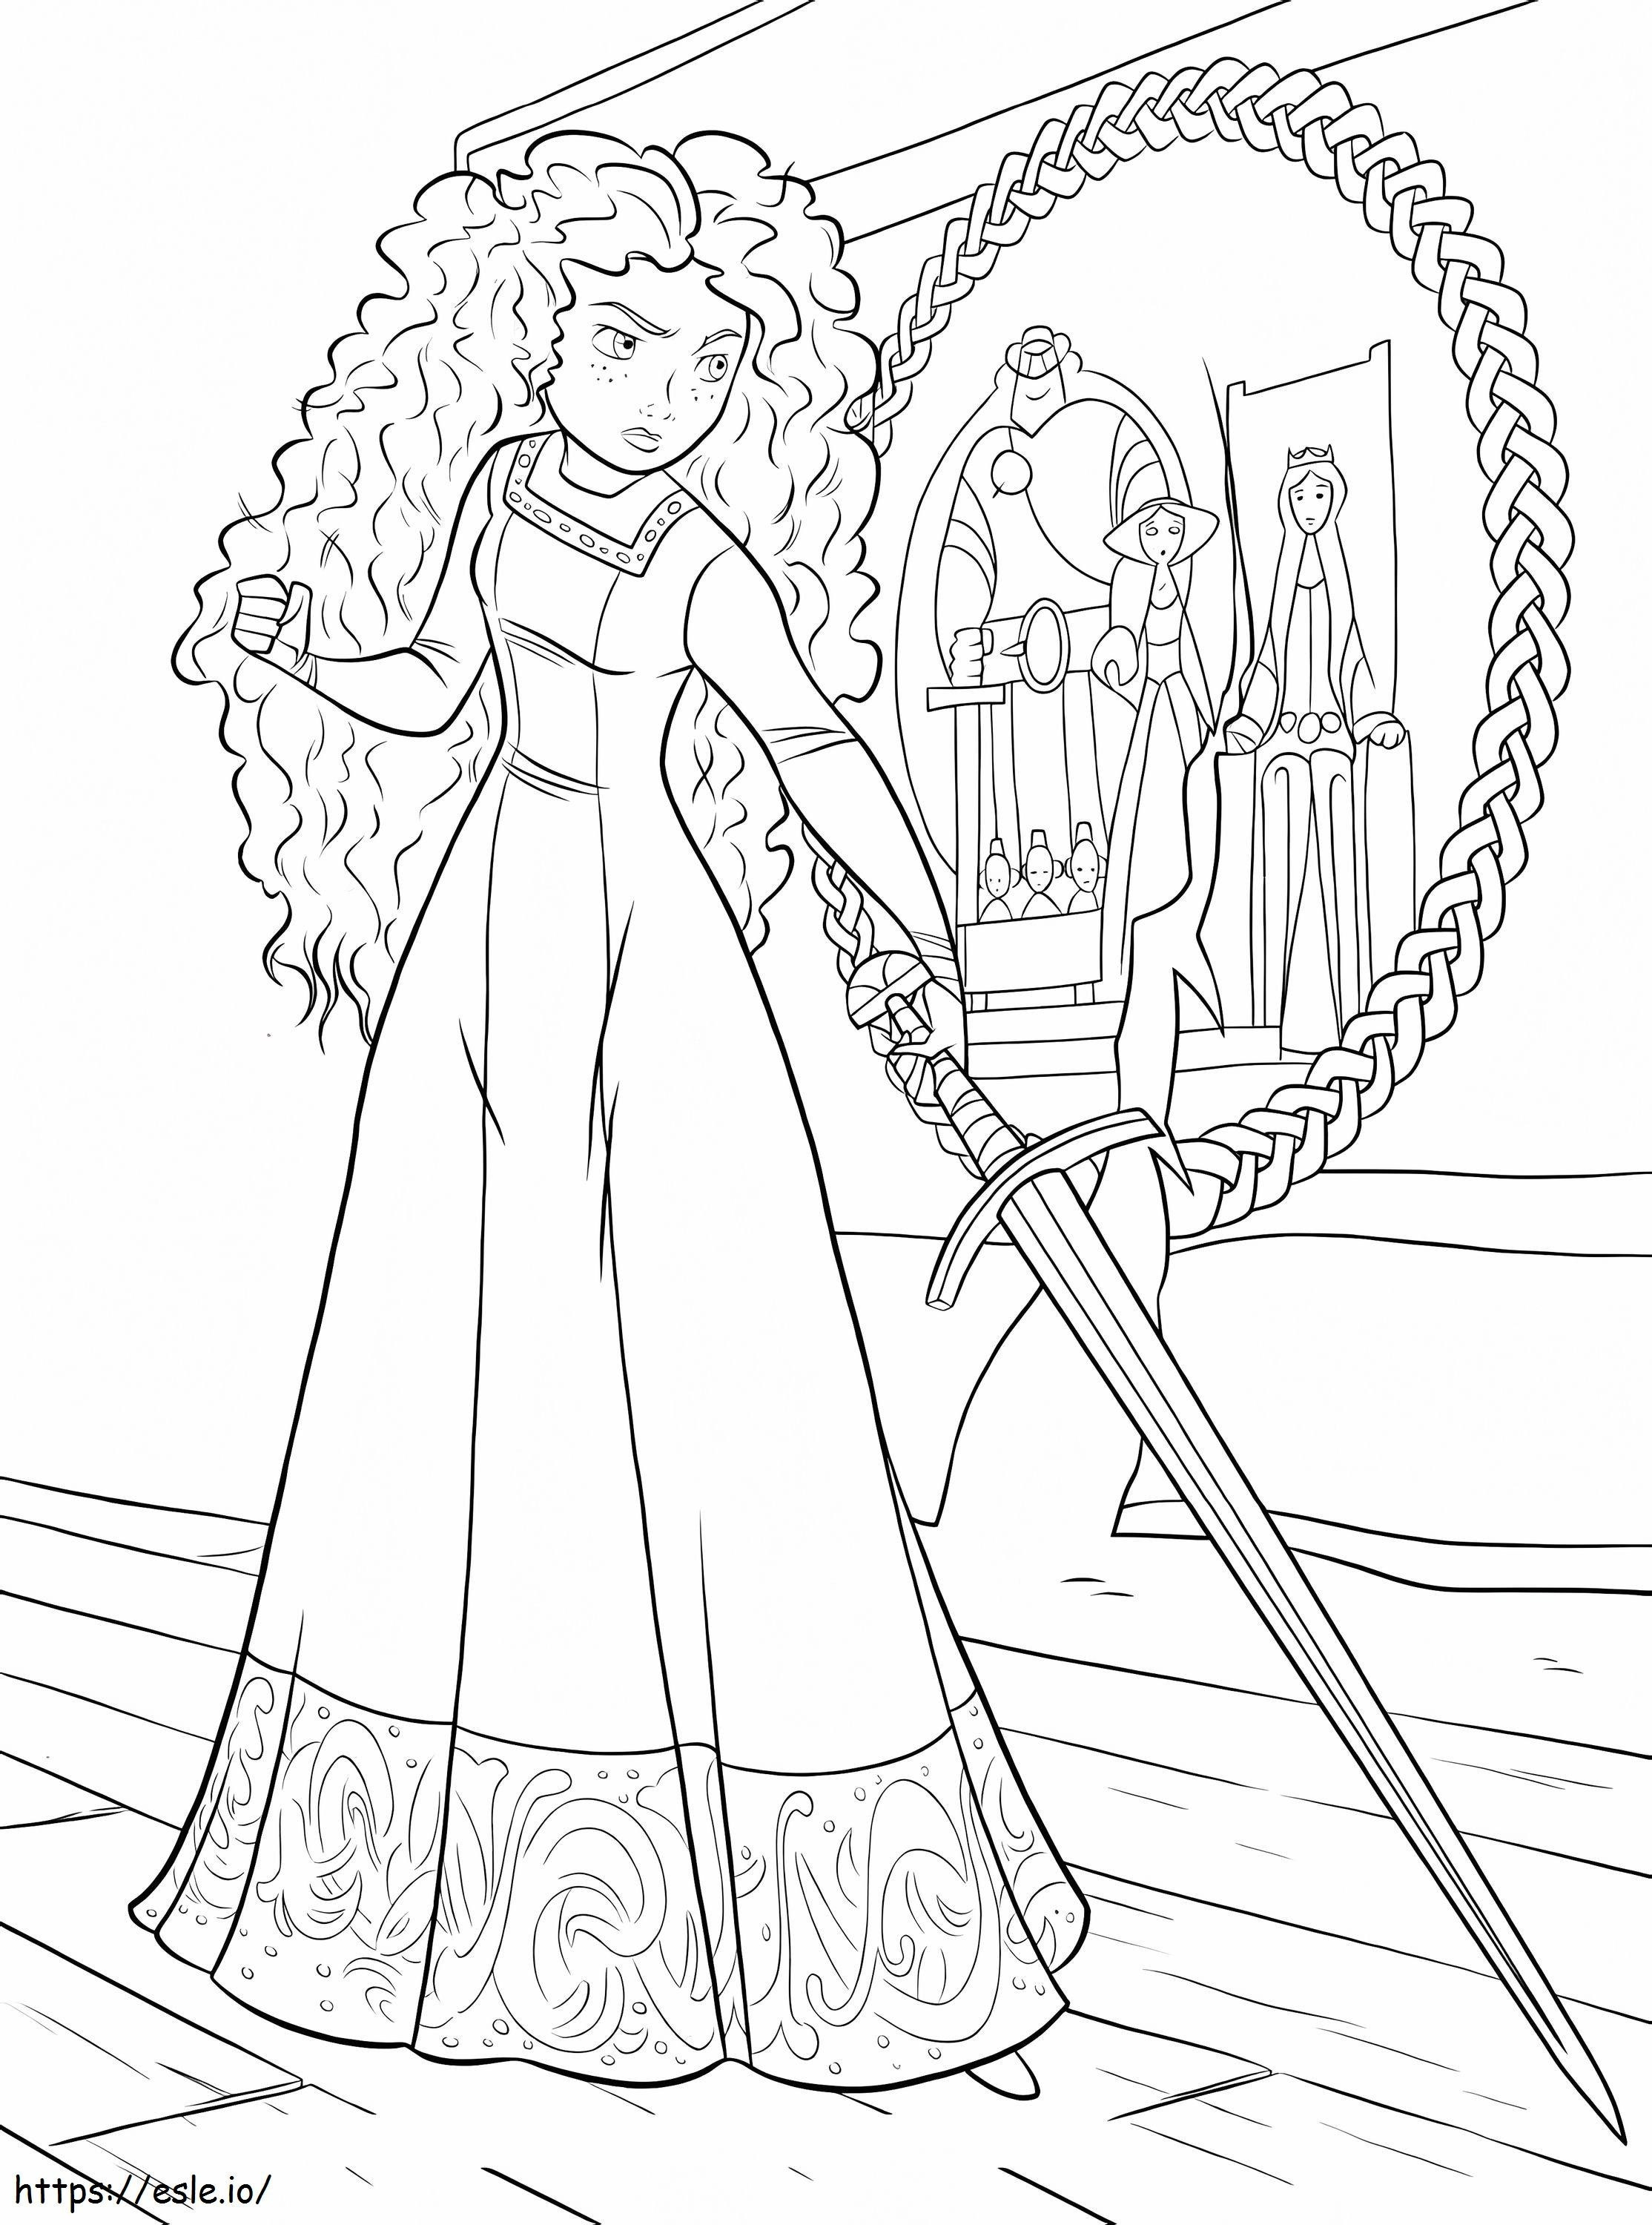 Prințesa Merida cu sabie de colorat